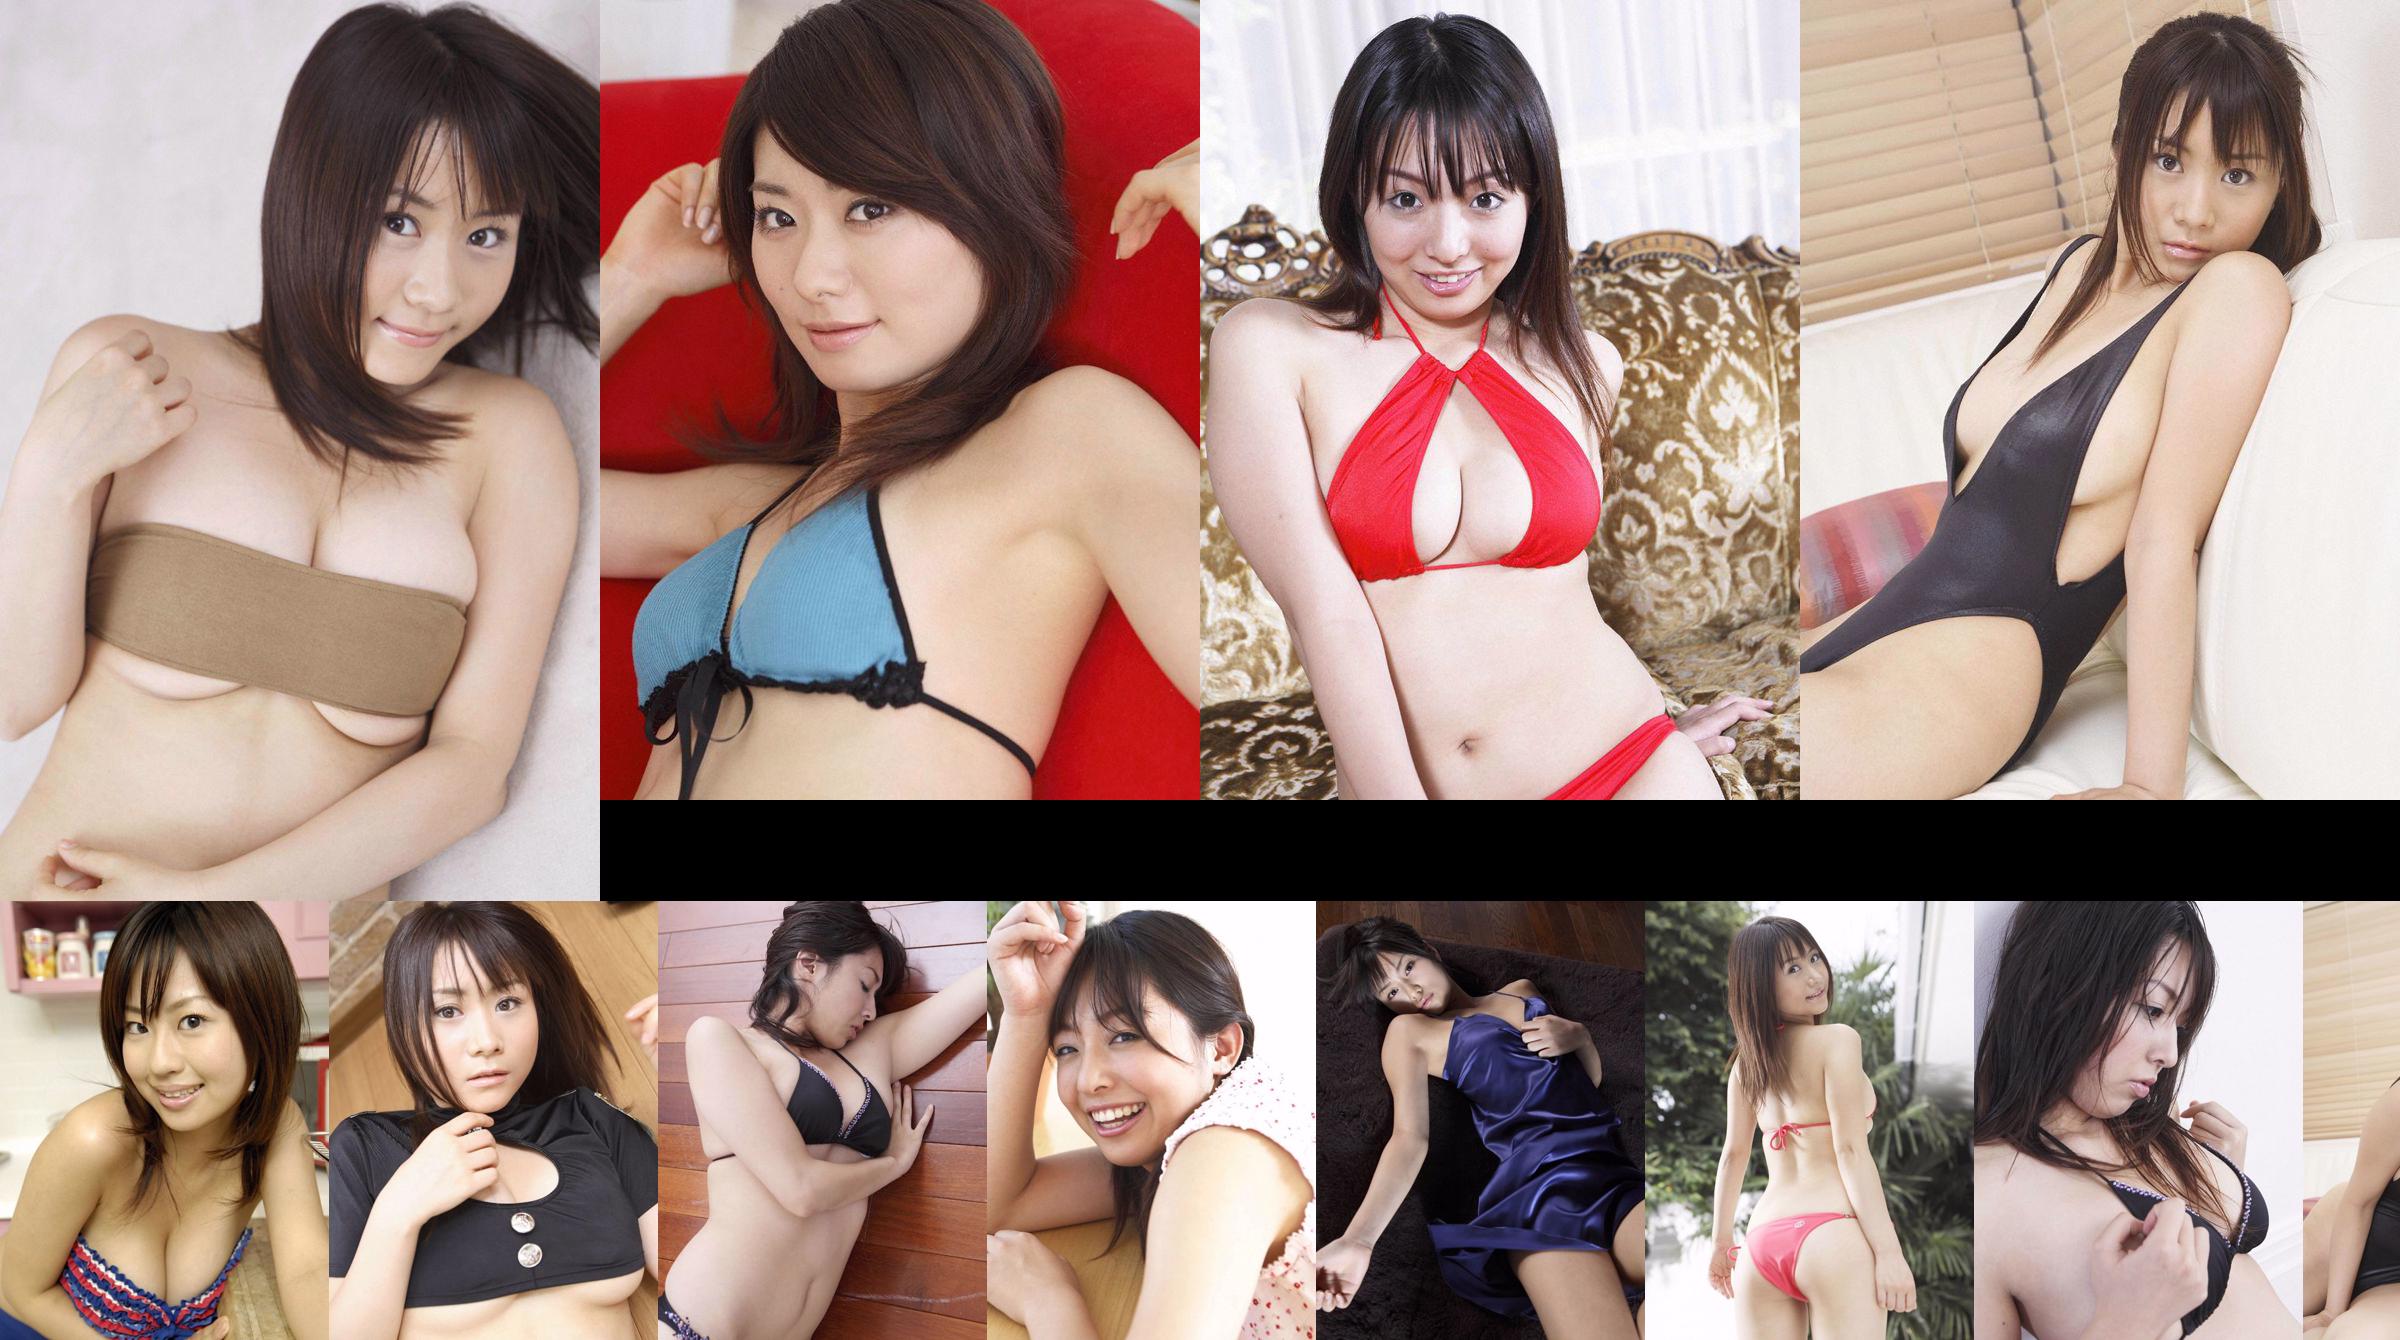 [Wanibooks] NO.37 Ai Arakawa, Hitomi Kaikawa, Hitomi Kitamura, Naomi I, Chii Matsuda Photo Collection No.e26590 Page 2